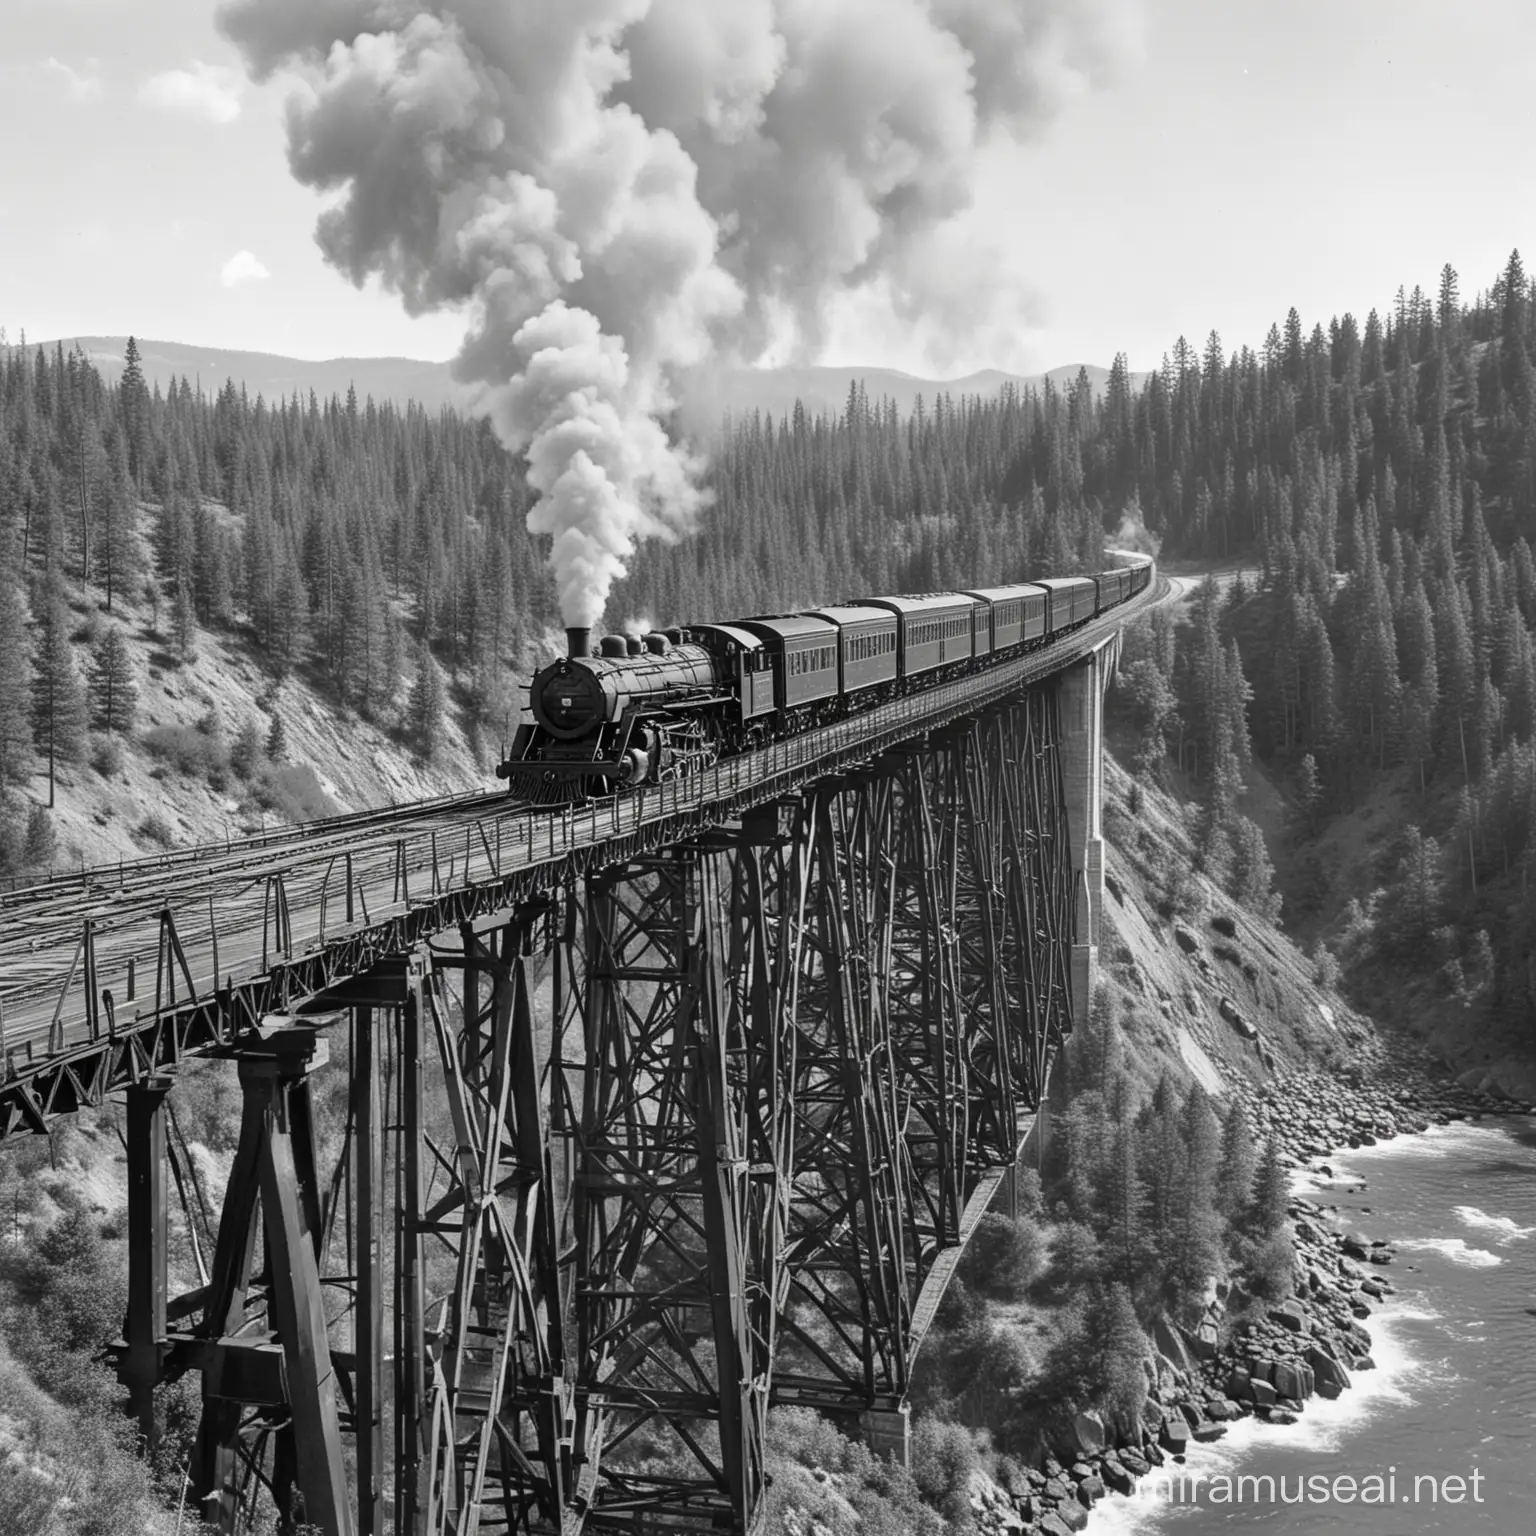 Vintage Steam Train on Wooden Trestle Bridge